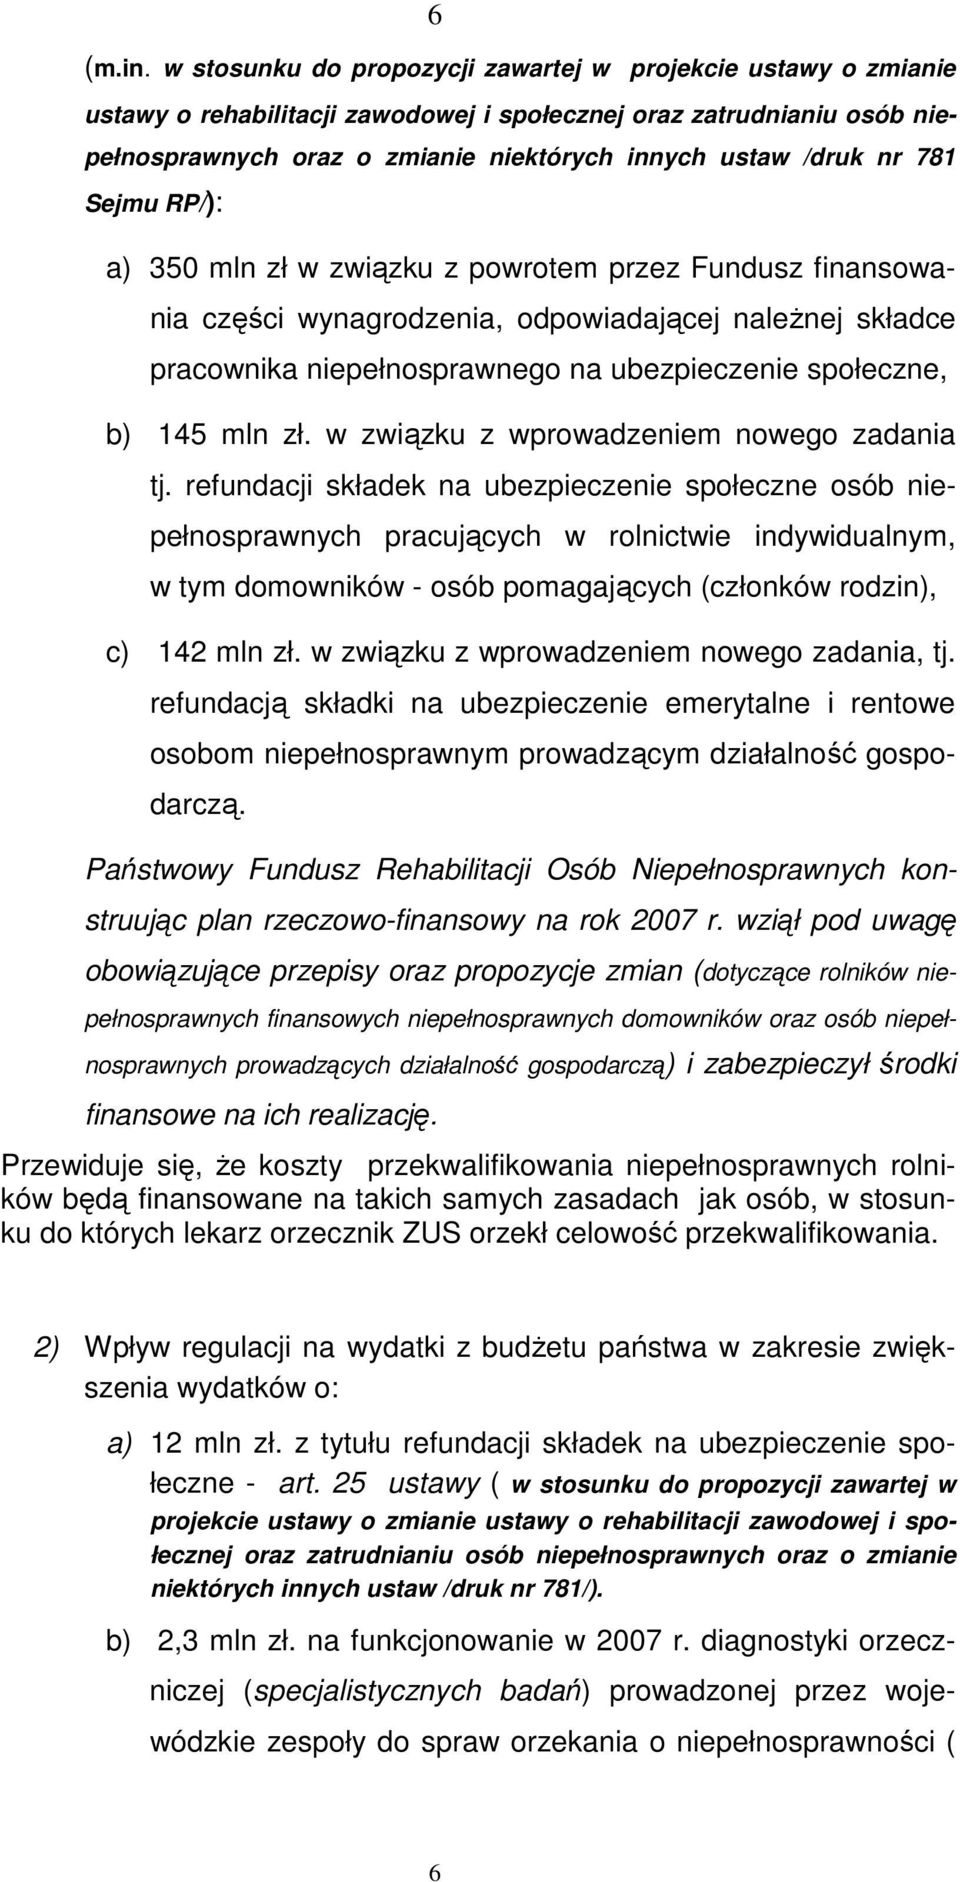 781 Sejmu RP/): a) 350 mln zł w związku z powrotem przez Fundusz finansowania części wynagrodzenia, odpowiadającej naleŝnej składce pracownika niepełnosprawnego na ubezpieczenie społeczne, b) 145 mln